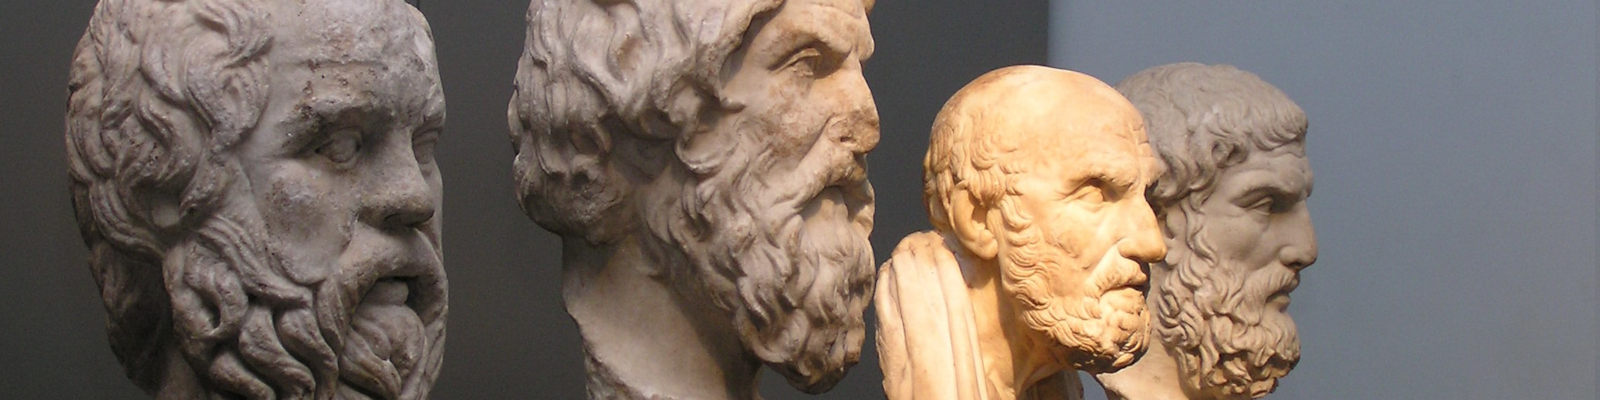 Bustos de Sócrate, Antístenes, Crisipo e Epicuro